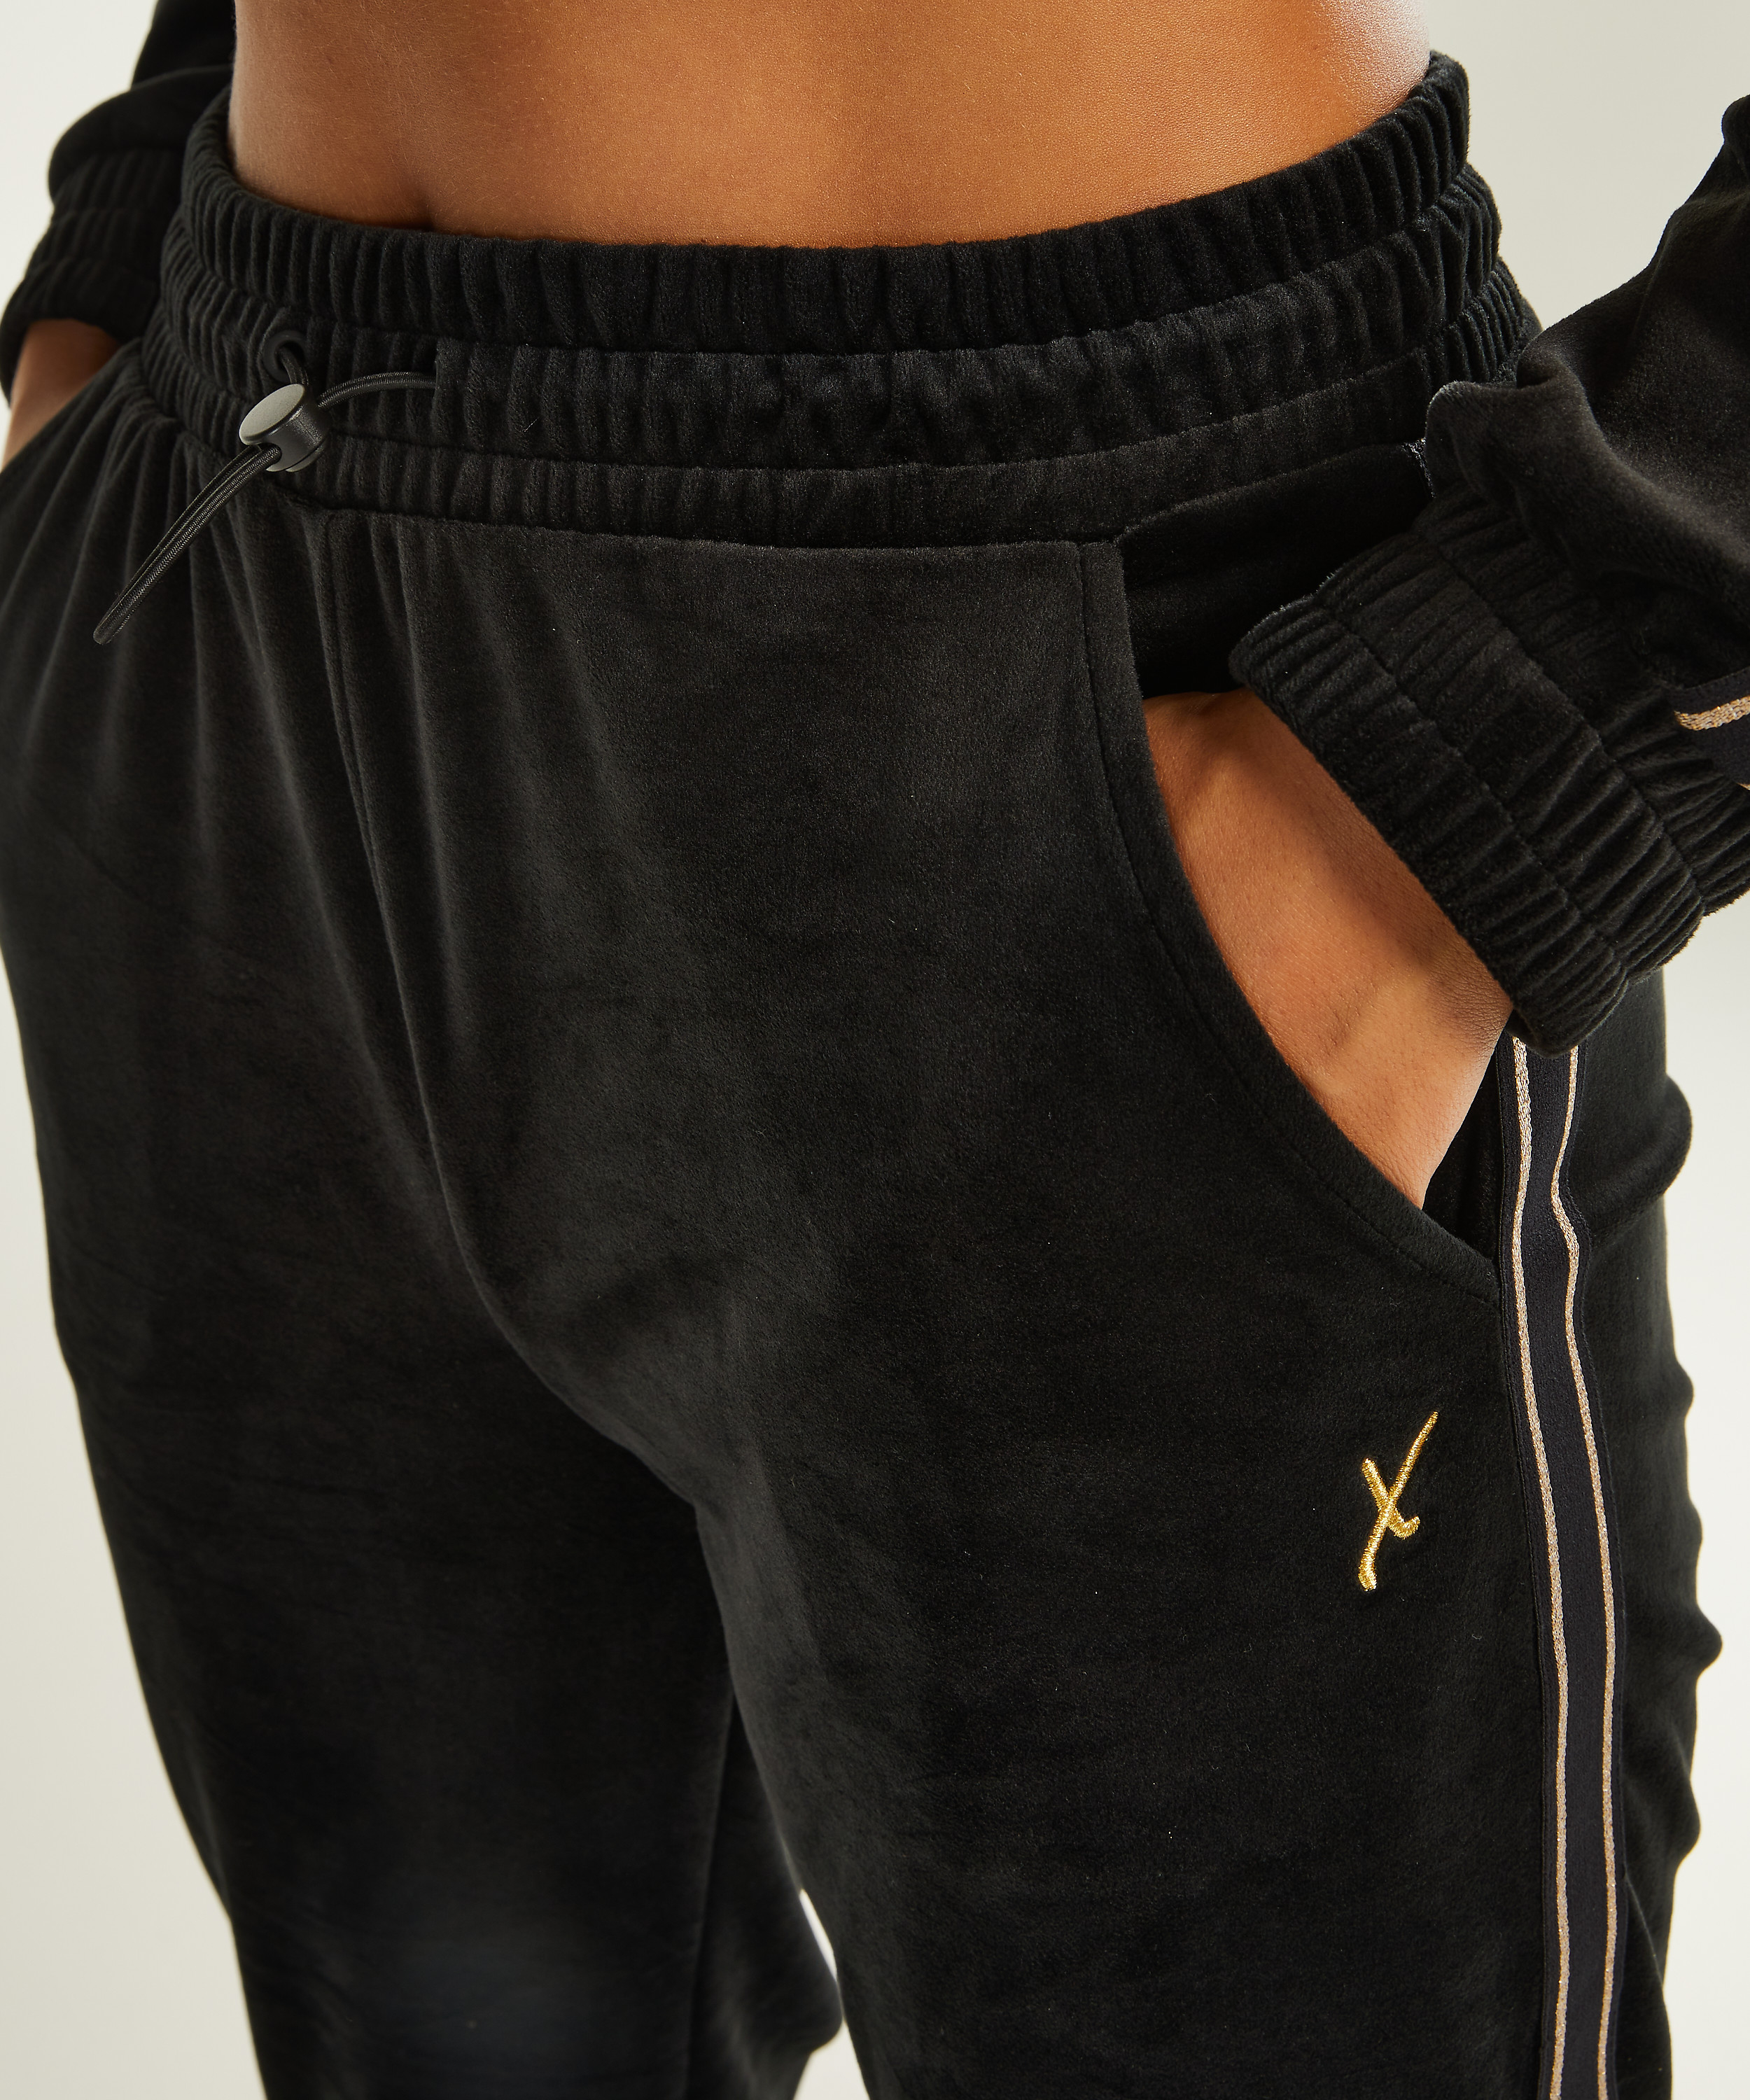 HKMX Sport pants Velours, Black, main